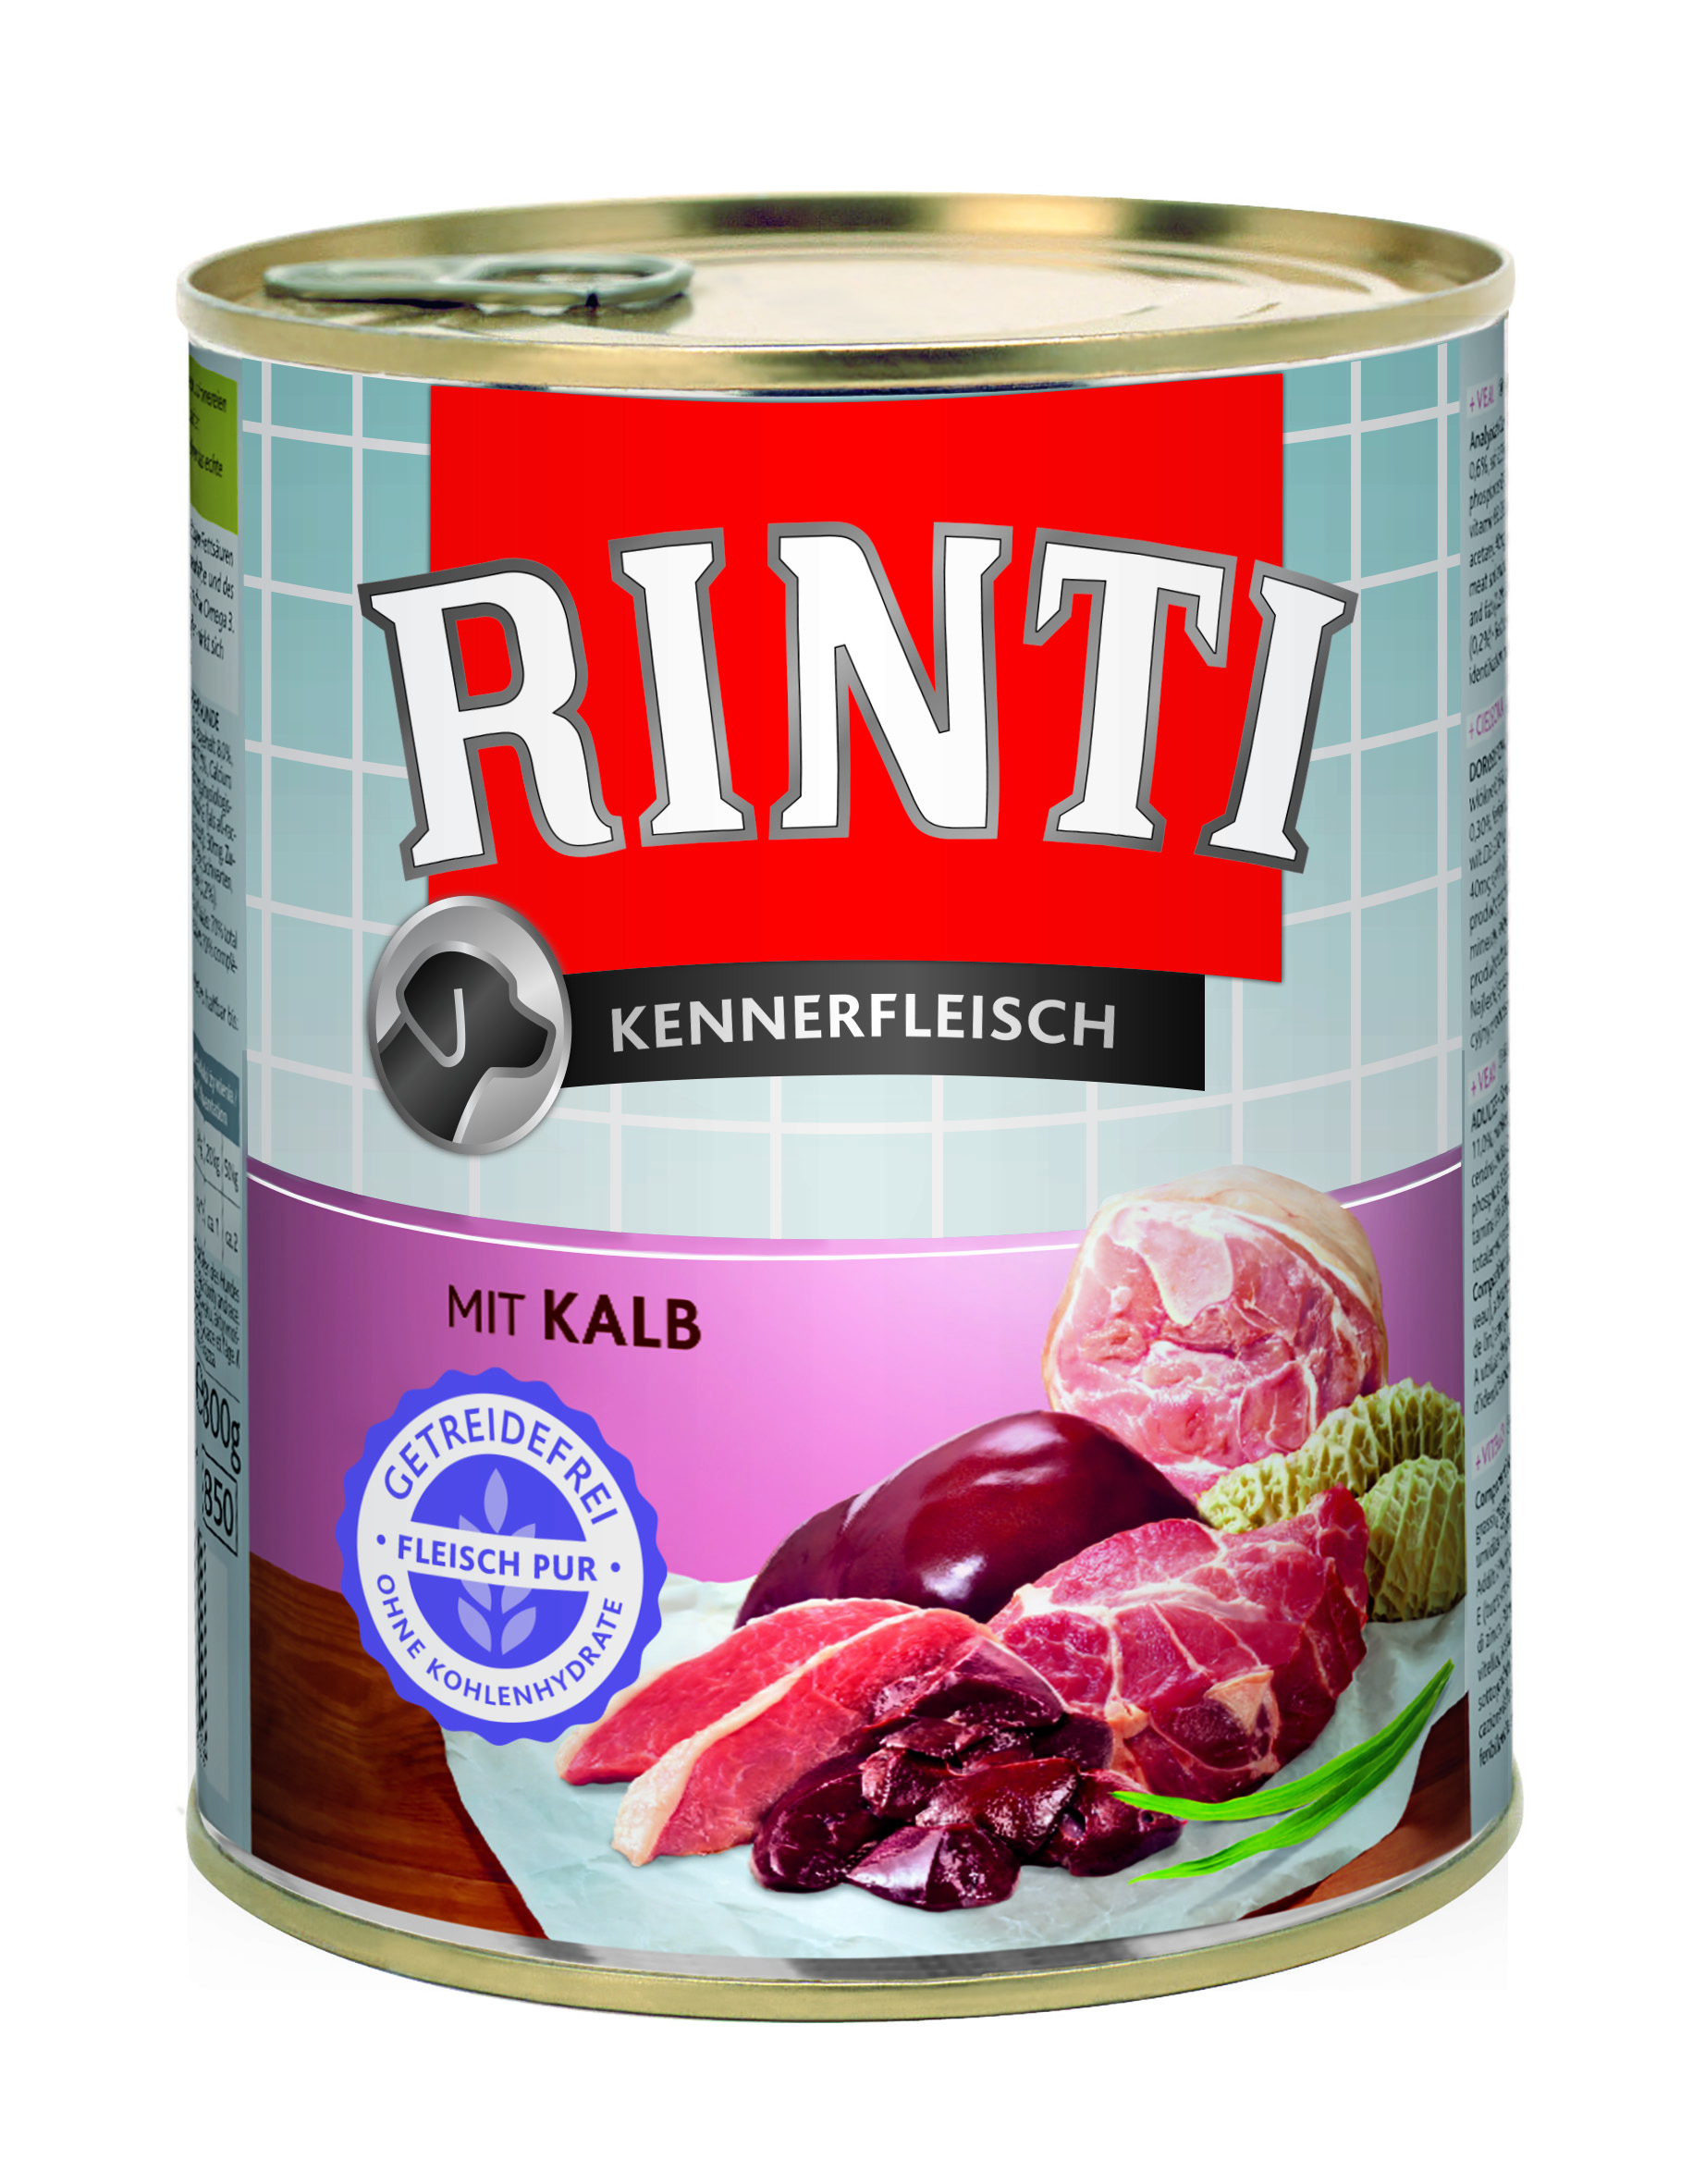 Rinti Kennerfleisch - mit Kalb